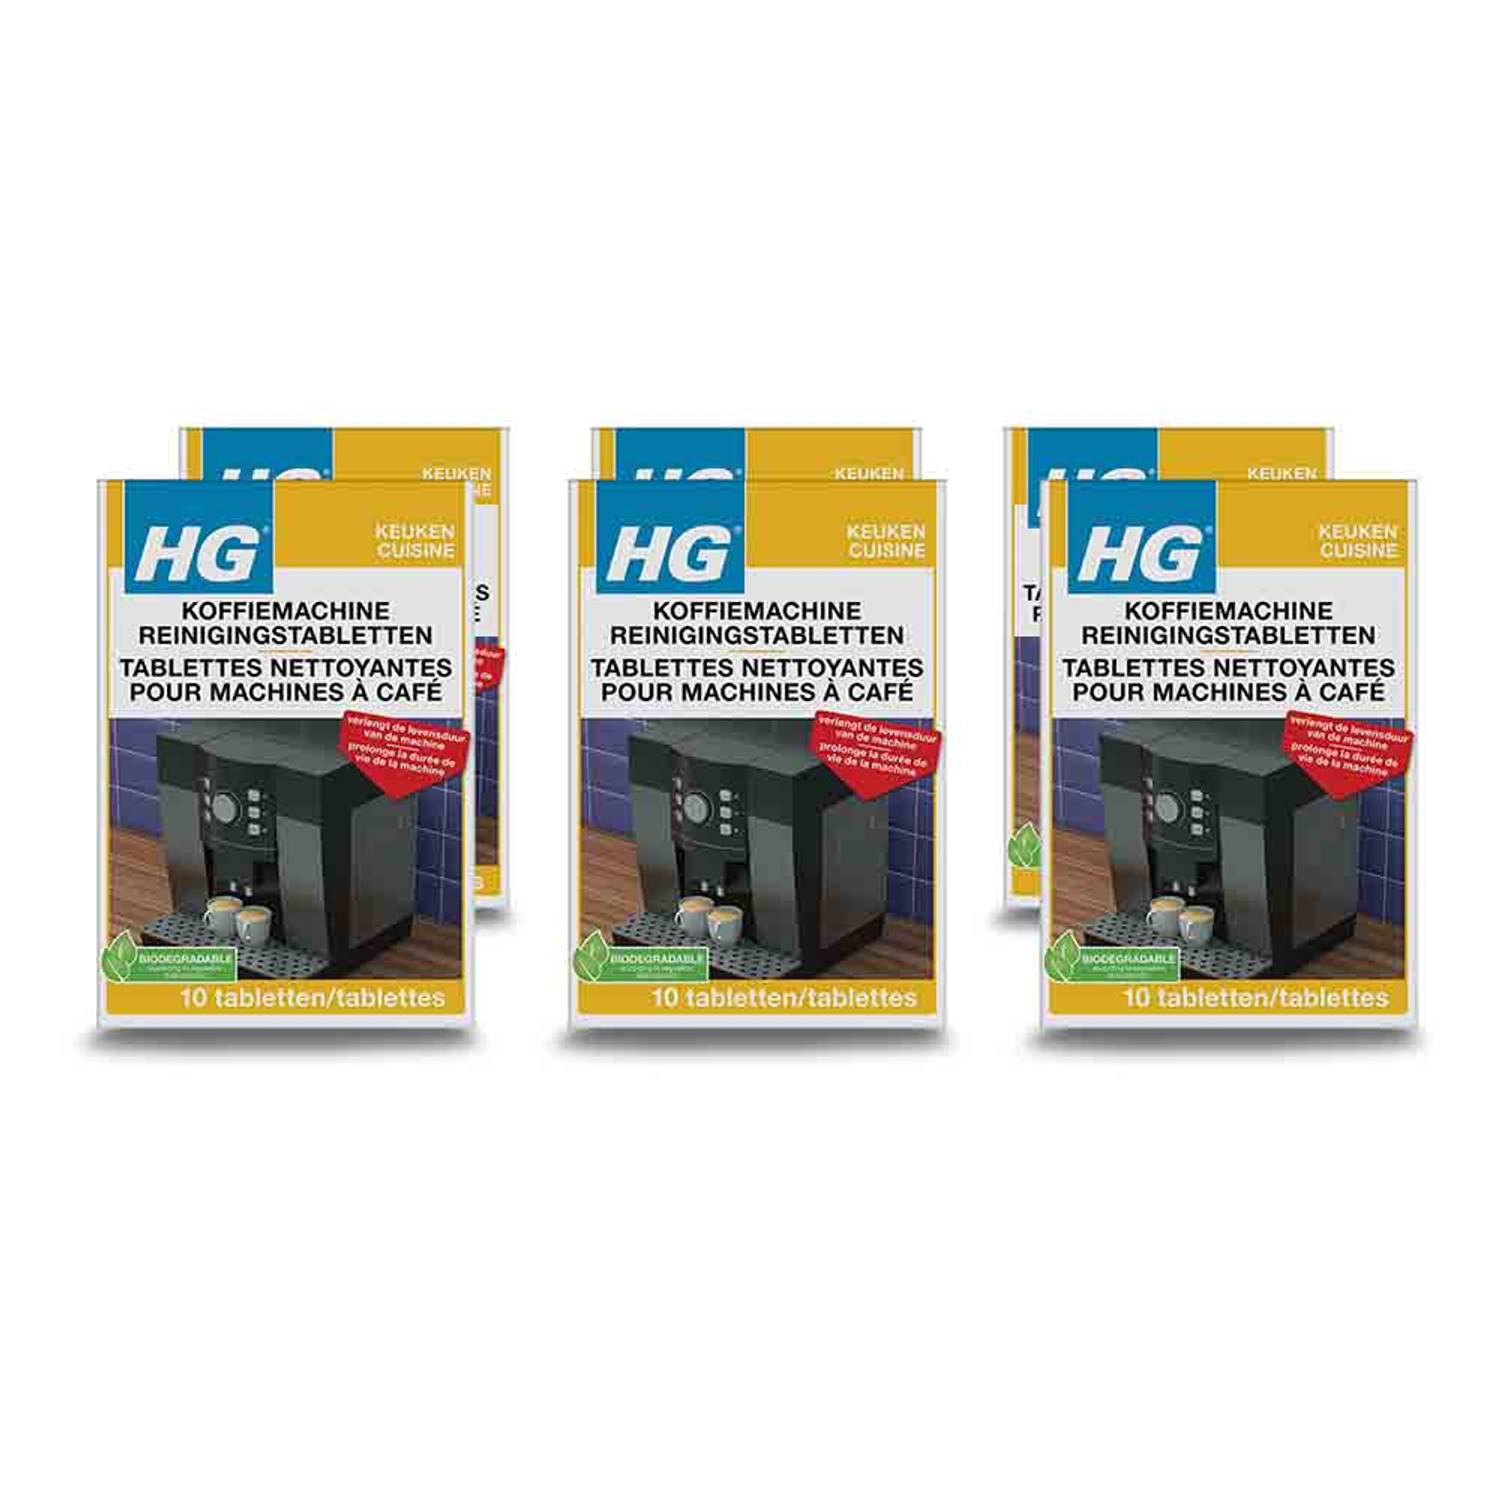 HG koffiemachine reinigingstabletten 10 tabletten - 6 stuks